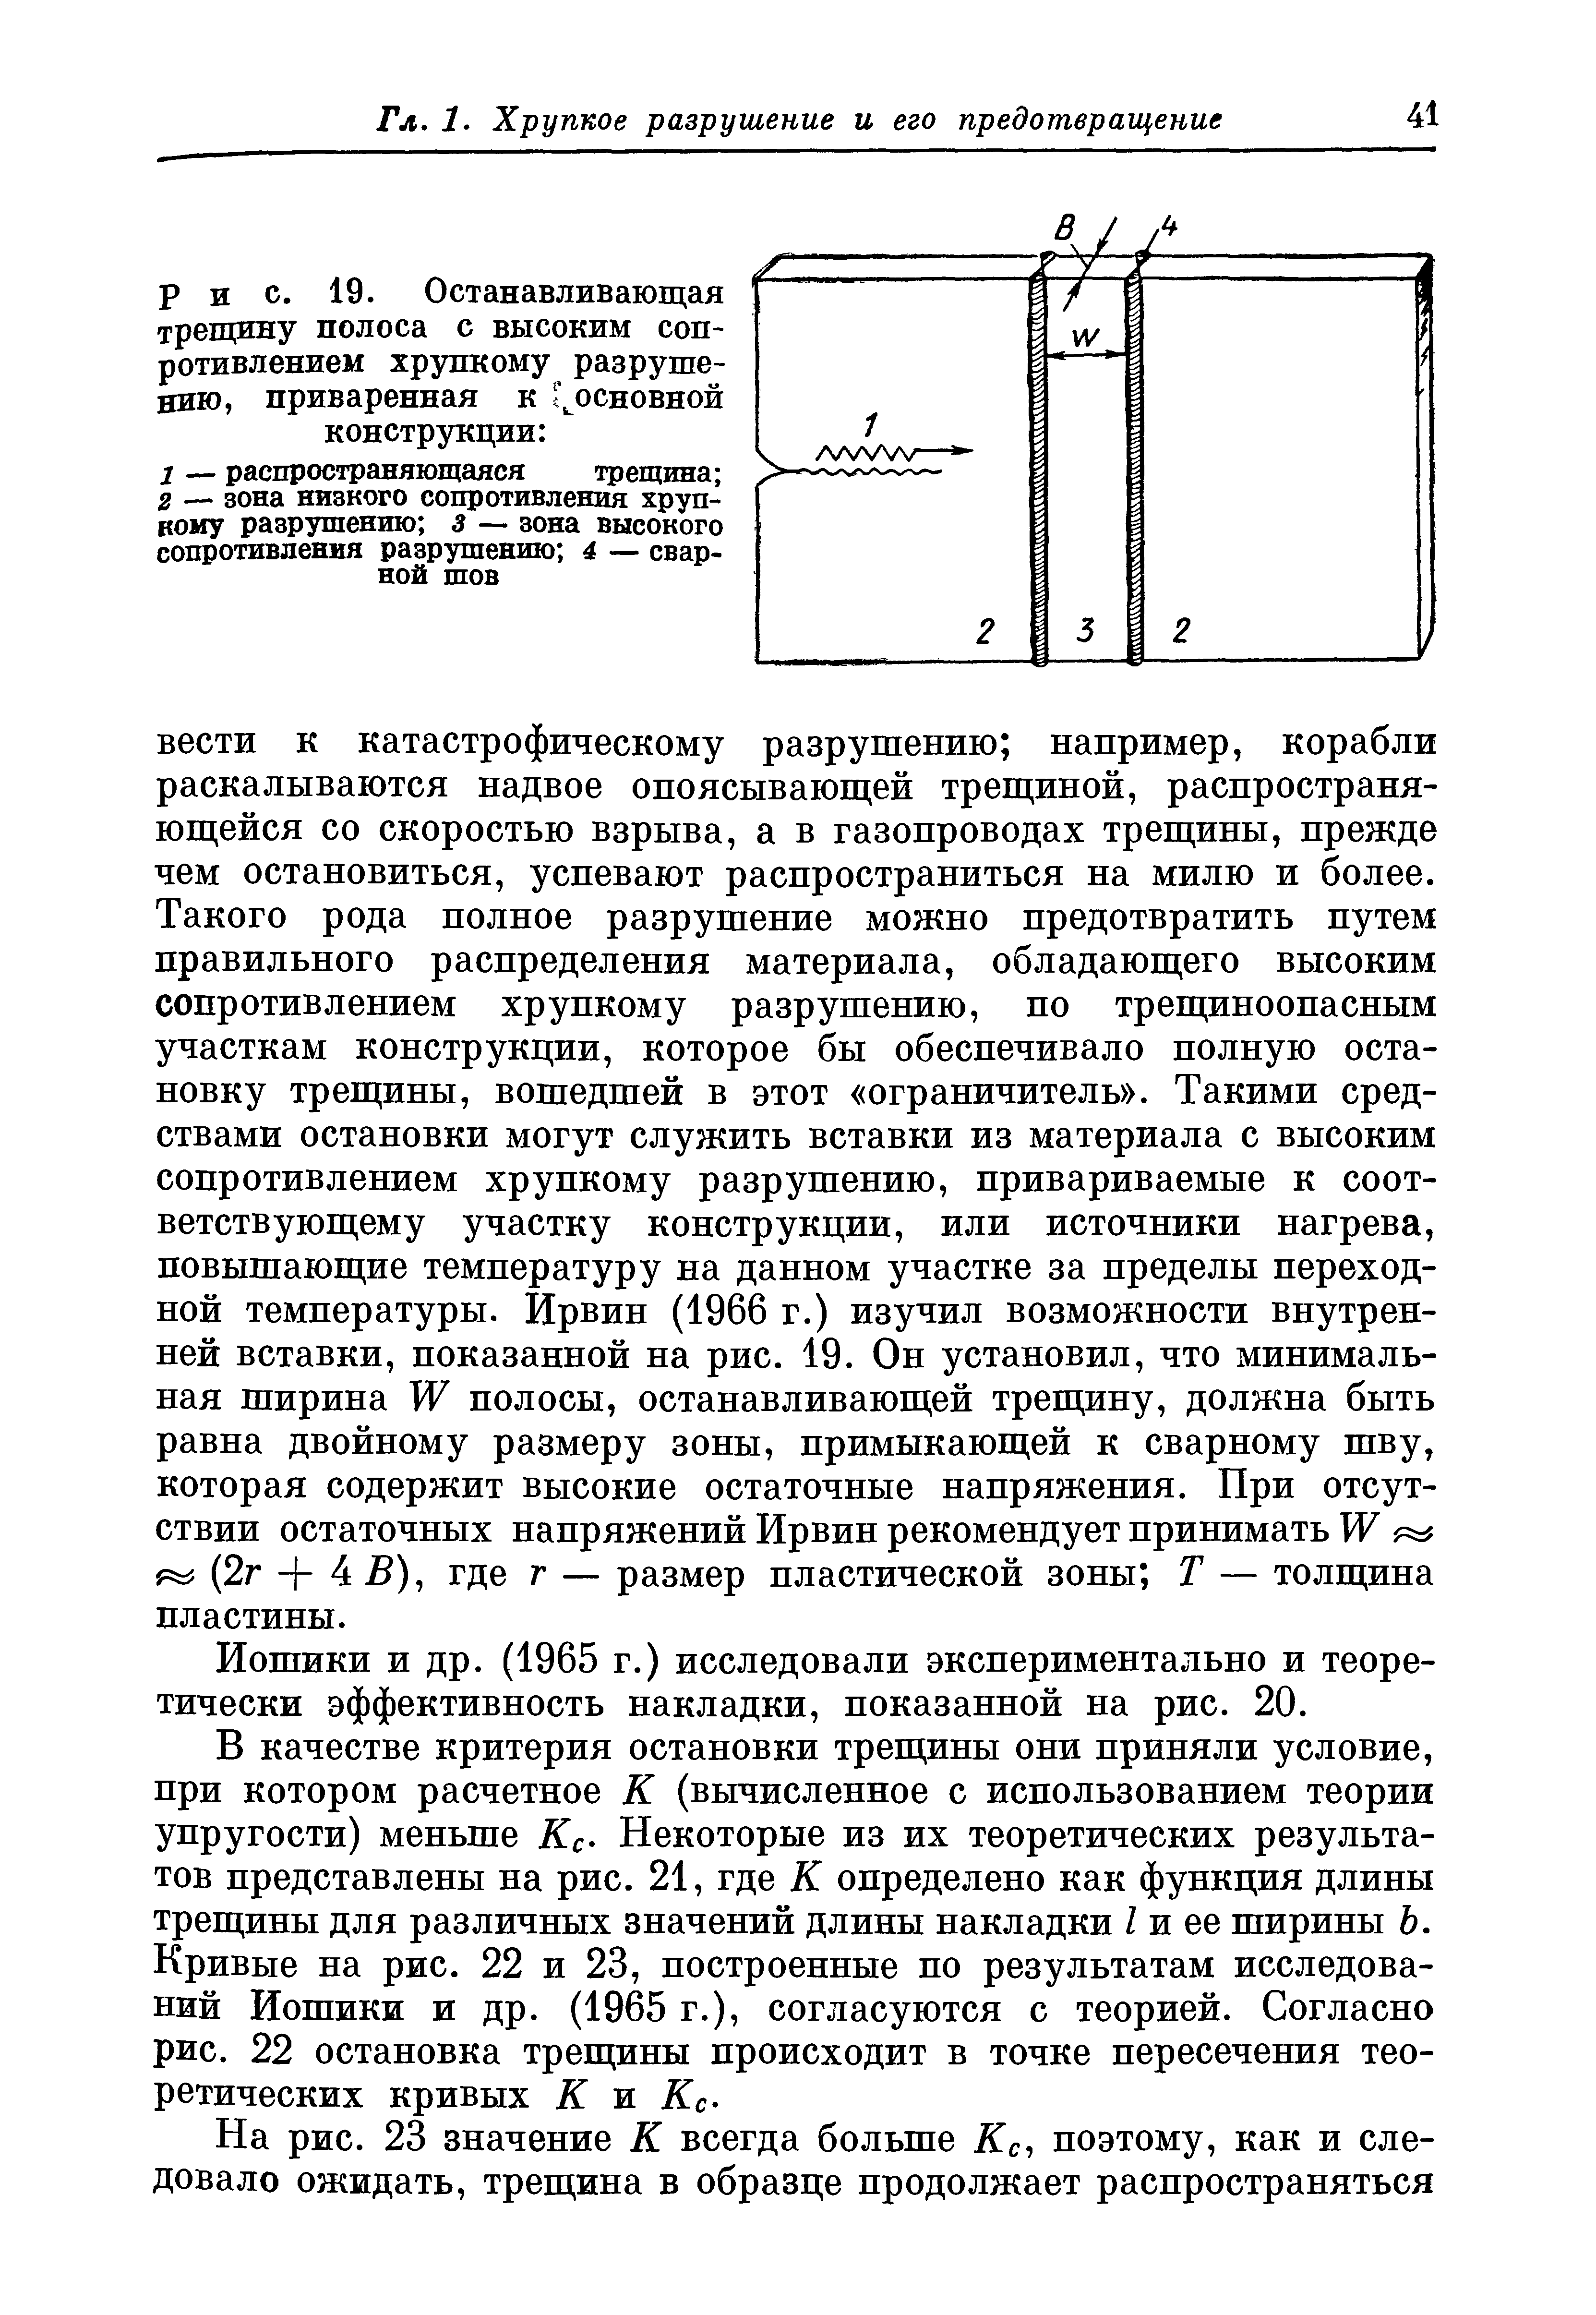 Иошики и др. (1965 г.) исследовали экспериментально и теоретически эффективность накладки, показанной на рис. 20.
